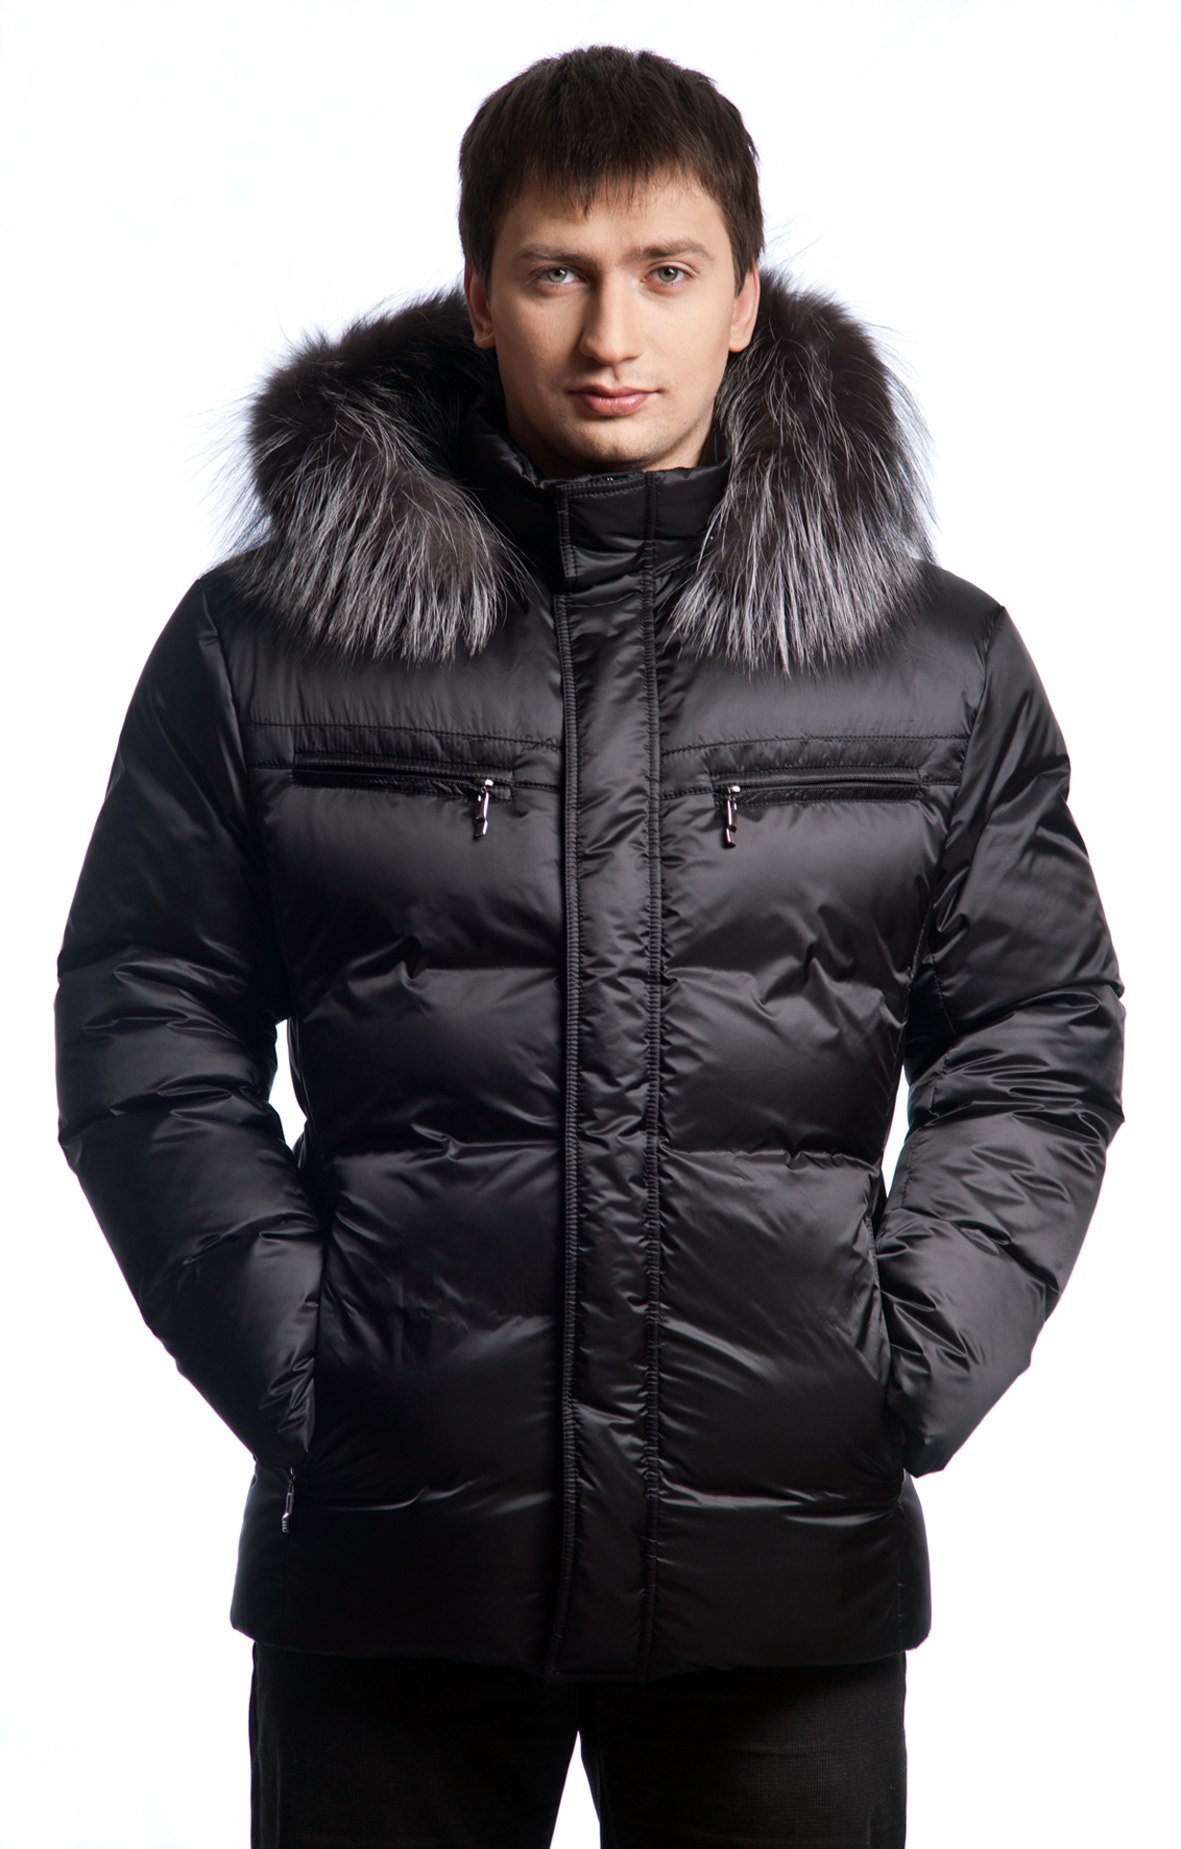 Недорогие мужские. Куртки Аляска мужские зимние 2022. Мужские зимние куртки Аляска на вайлдберриз. Пуховик мужской Laplandia 2021. Парка Аляска мужская 2022.